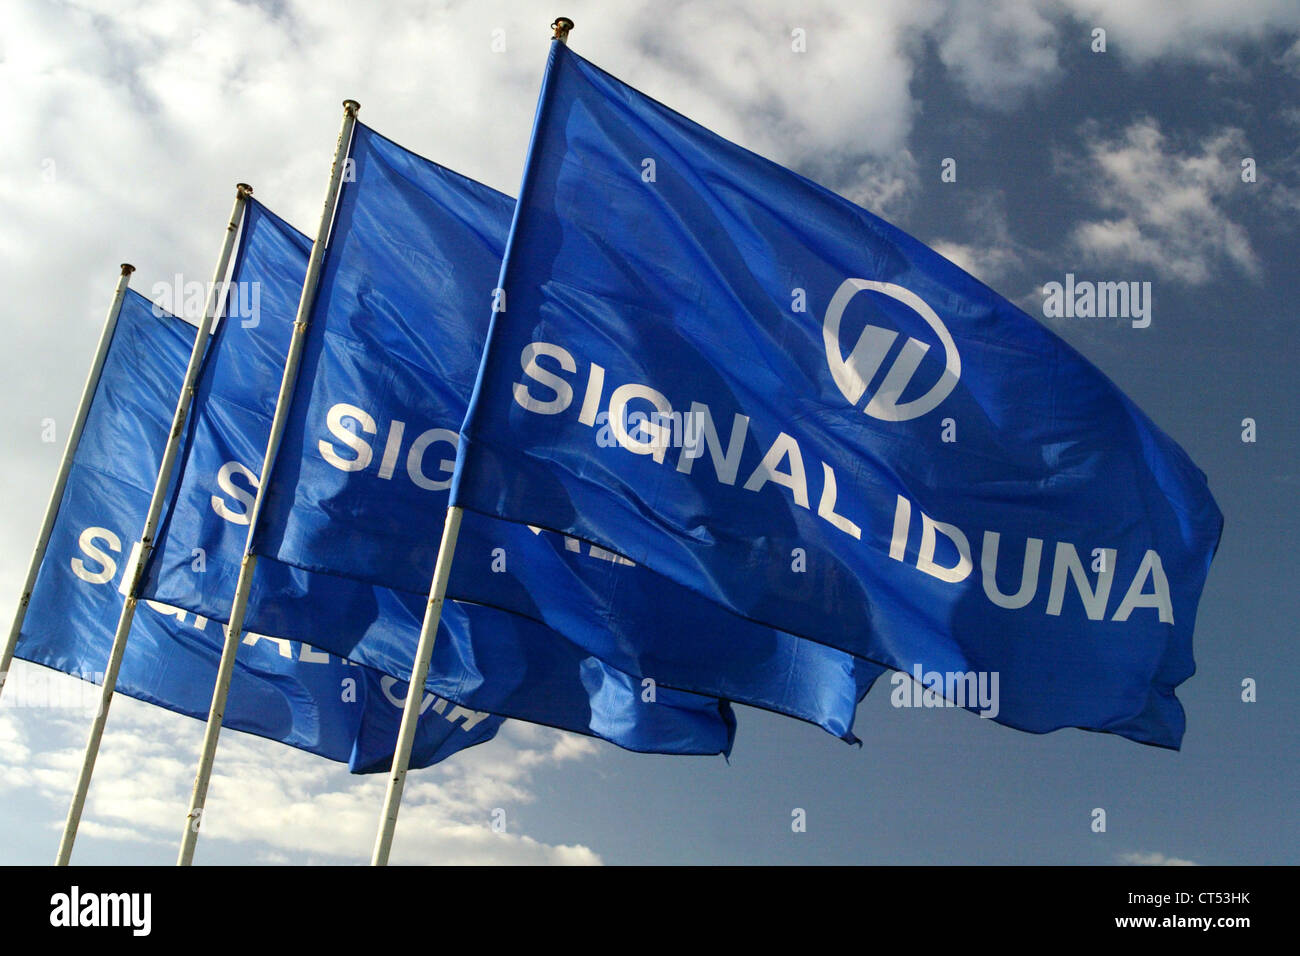 Banderas de la Signal Iduna en el viento Foto de stock